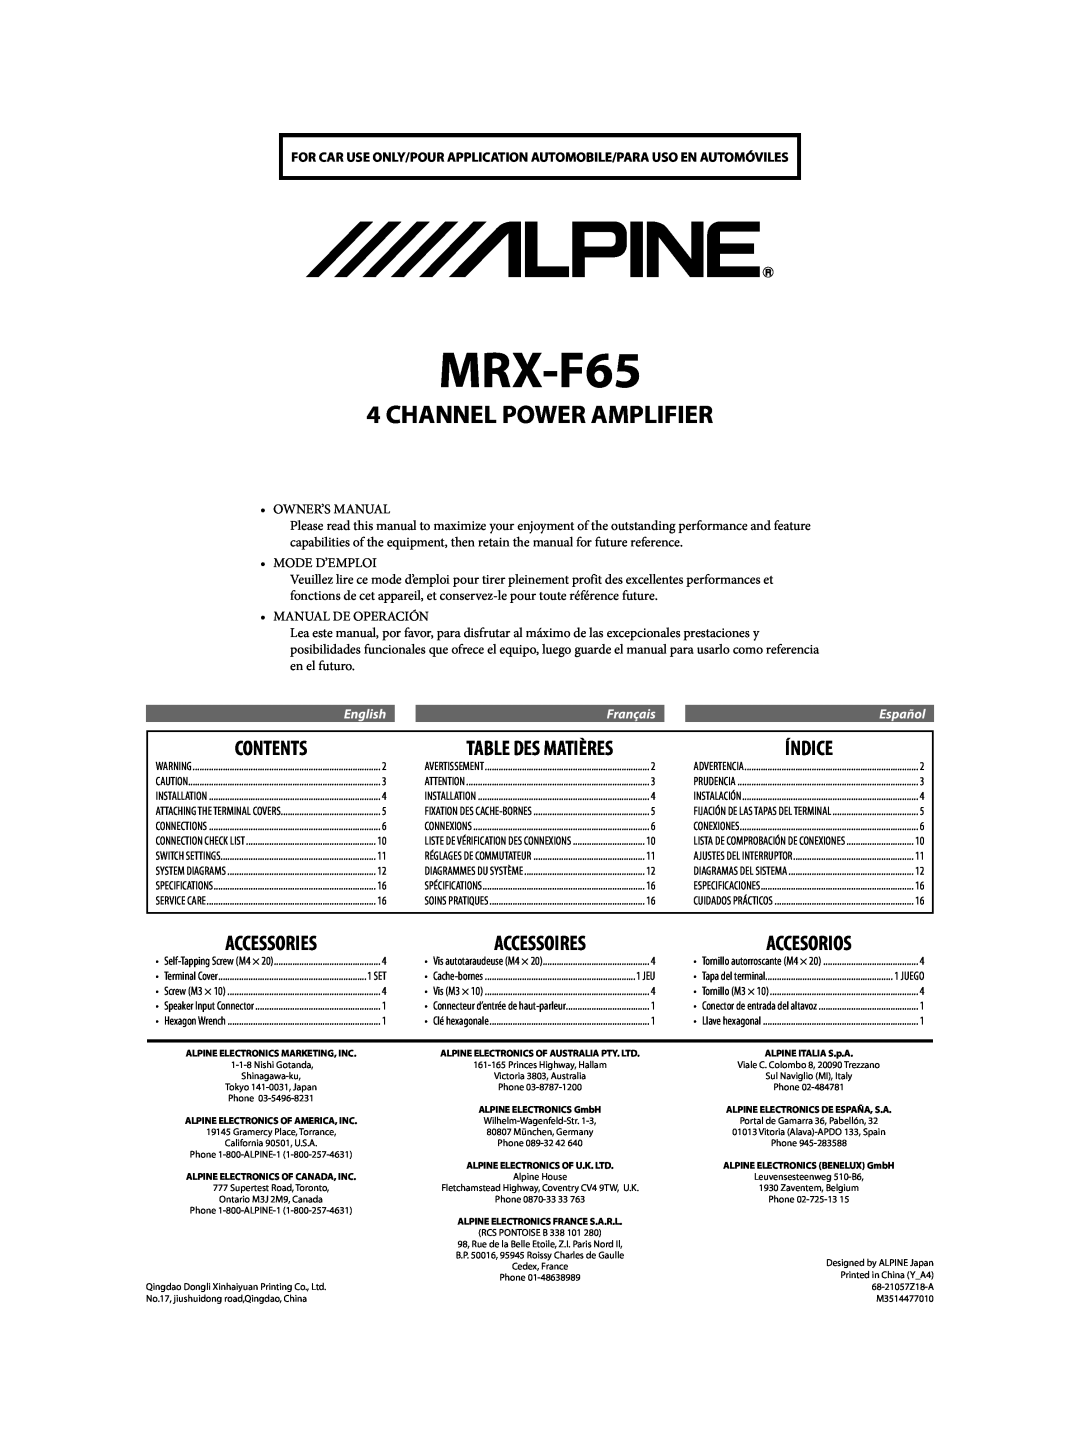 Alpine MRX-F65 68-21057Z18-A owner manual Contents, Índice, Table Des Matières, Channel Power Amplifier, Mode D’Emploi 